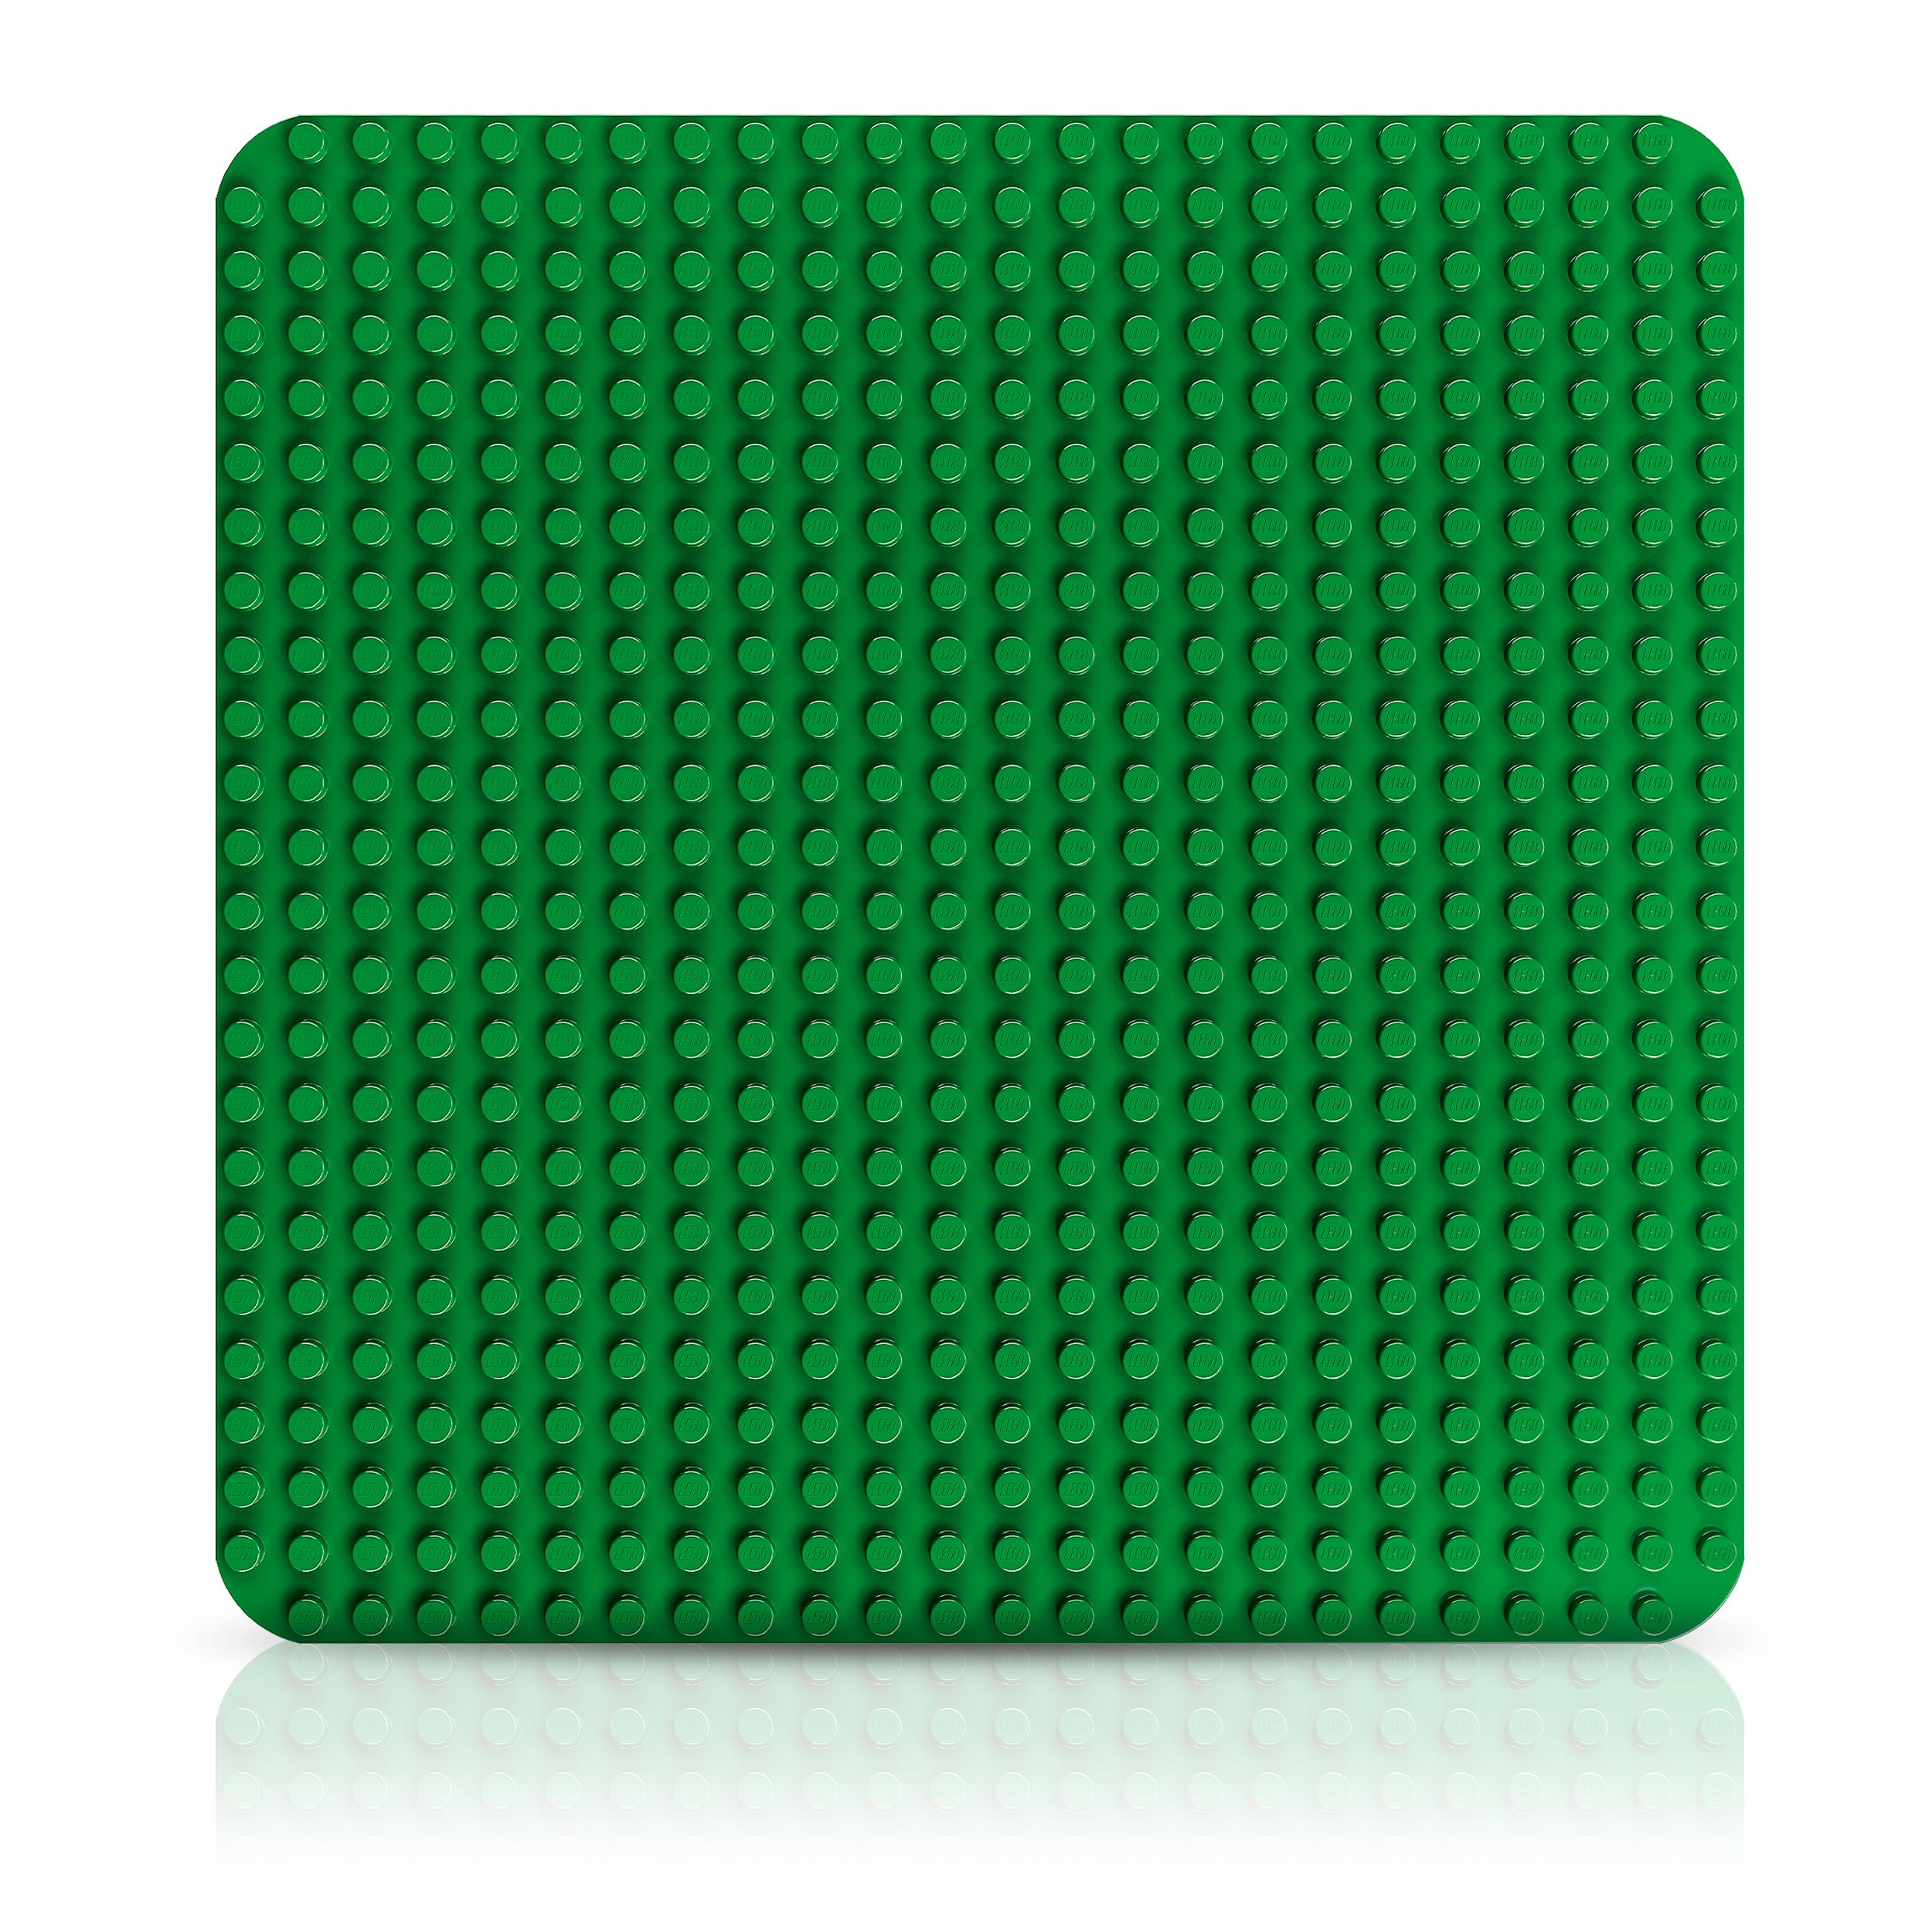 Lego duplo 10980 base verde, tavola classica per mattoncini, piattaforma giocattolo, superfice di costruzione per bambini - LEGO DUPLO, Lego